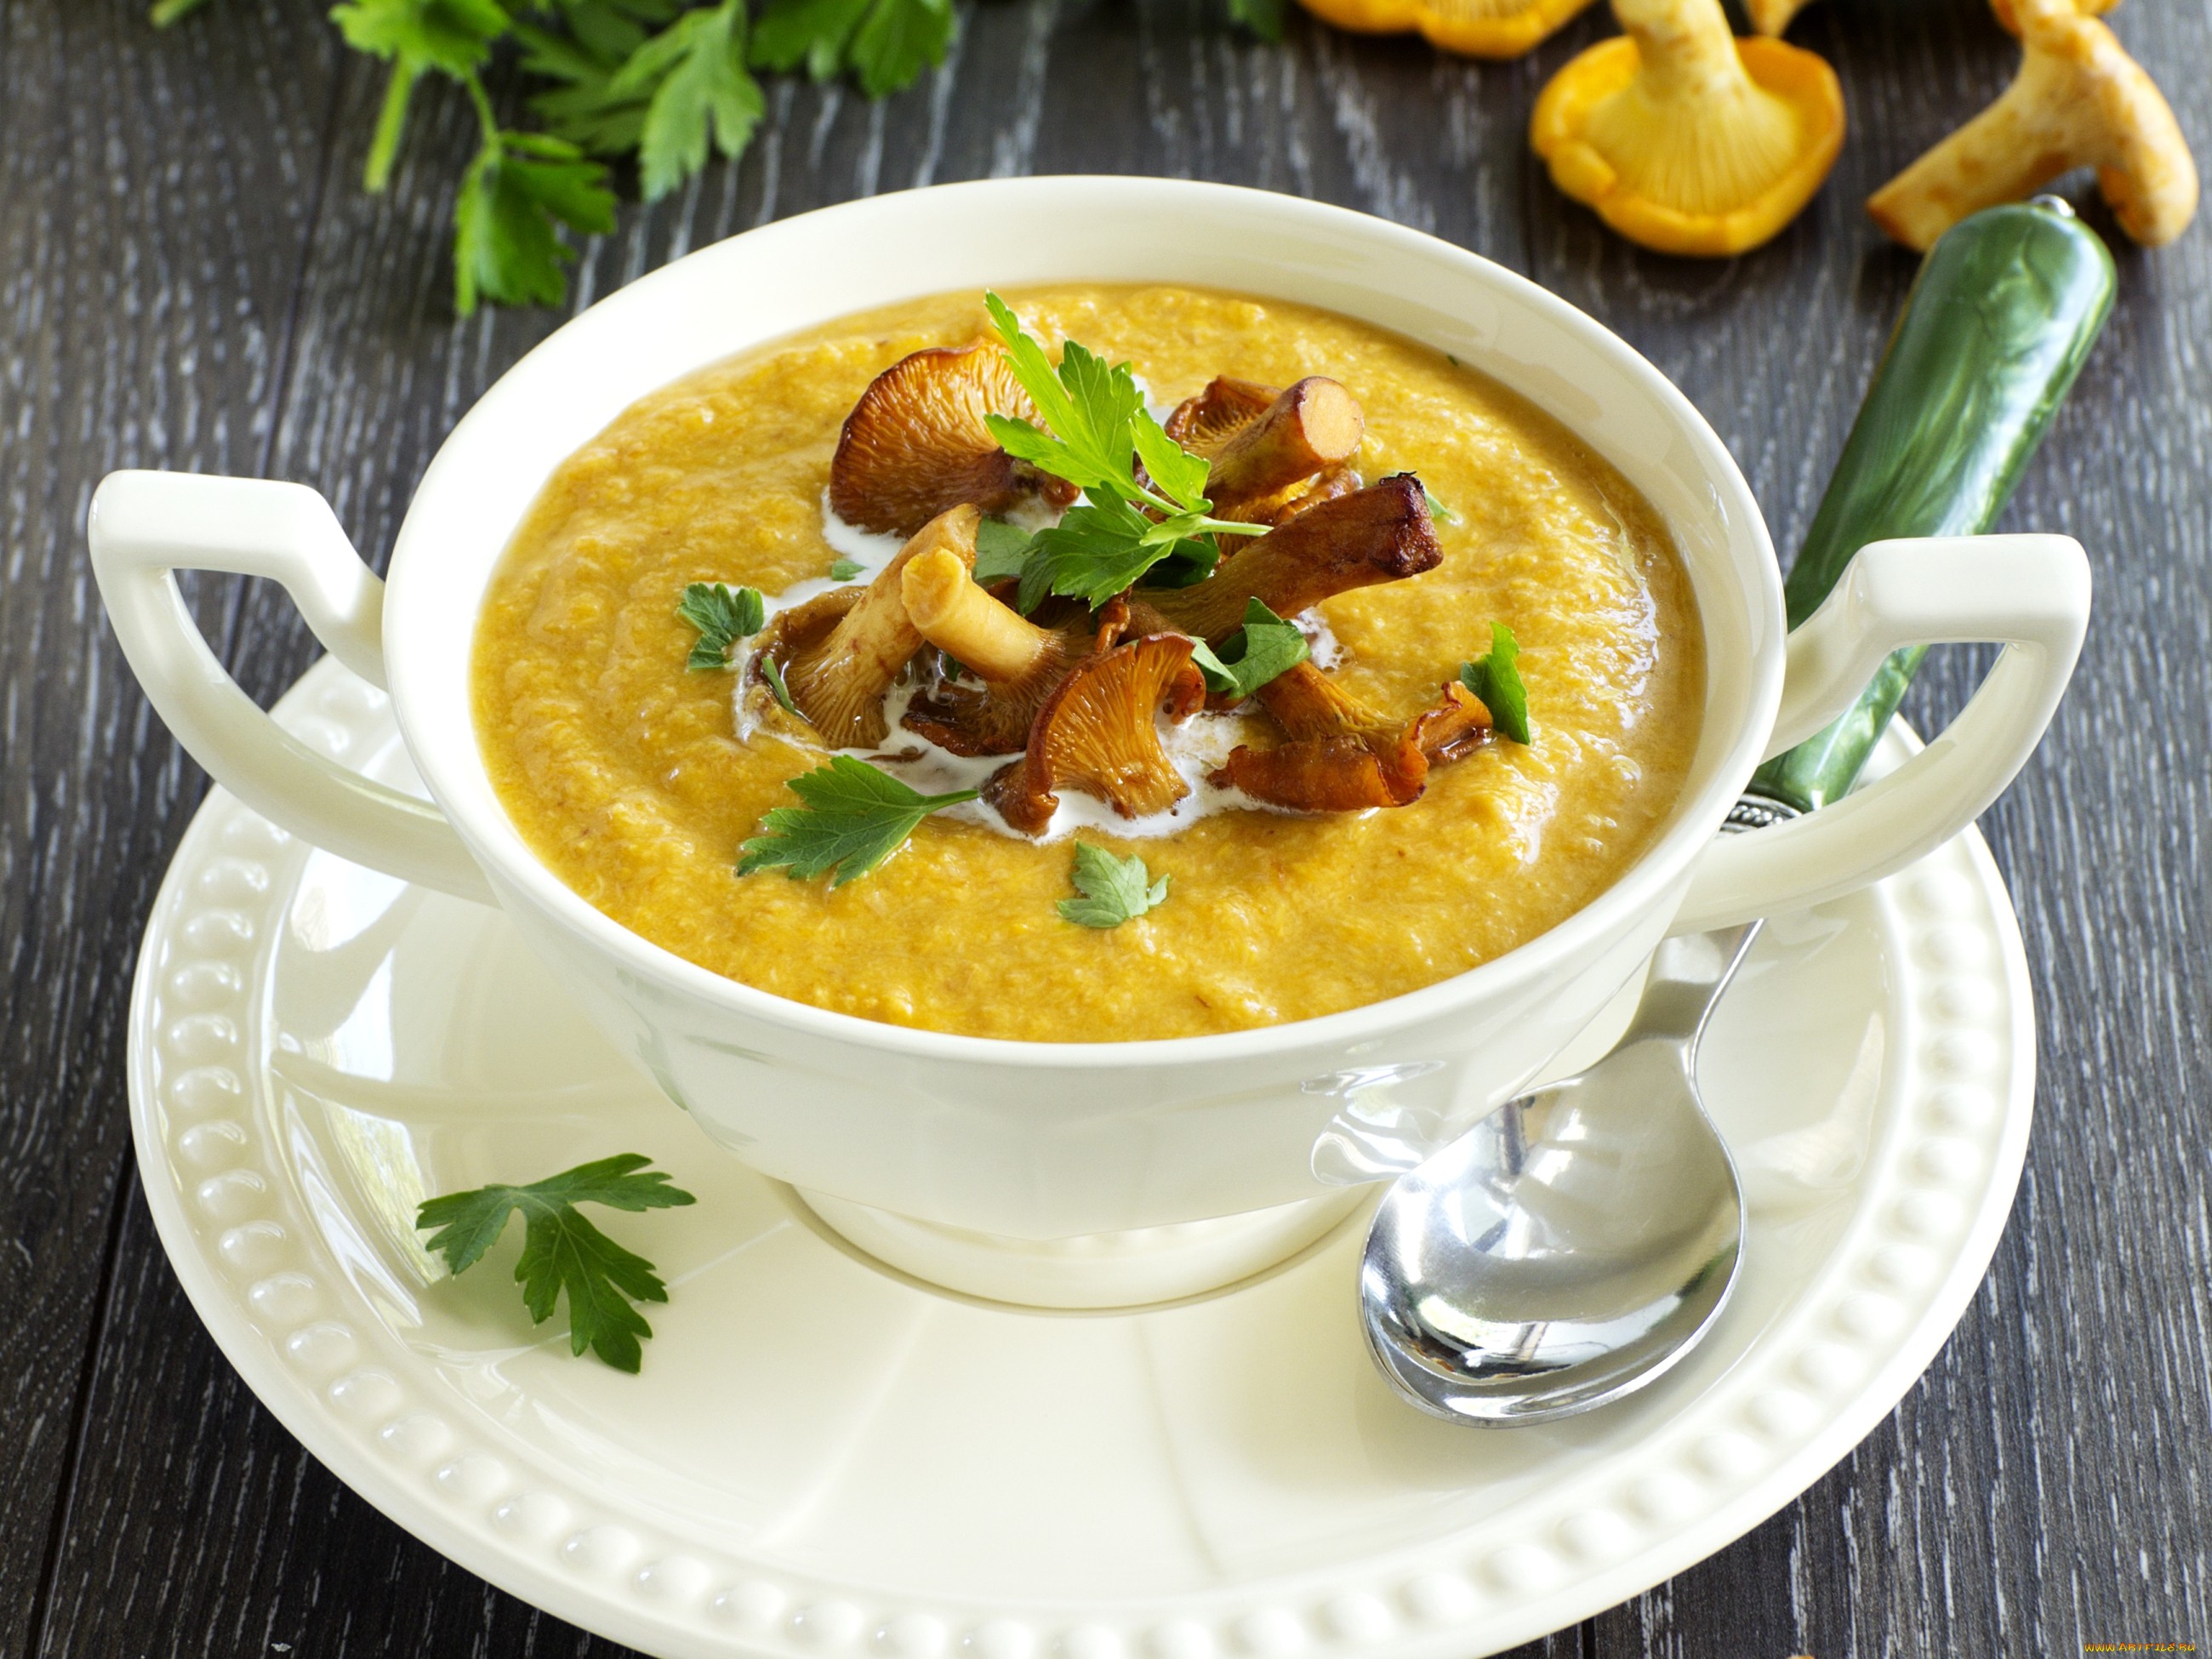 Суп из лисичек - как приготовить в домашних условиях из свежих или замороженных грибов с фото